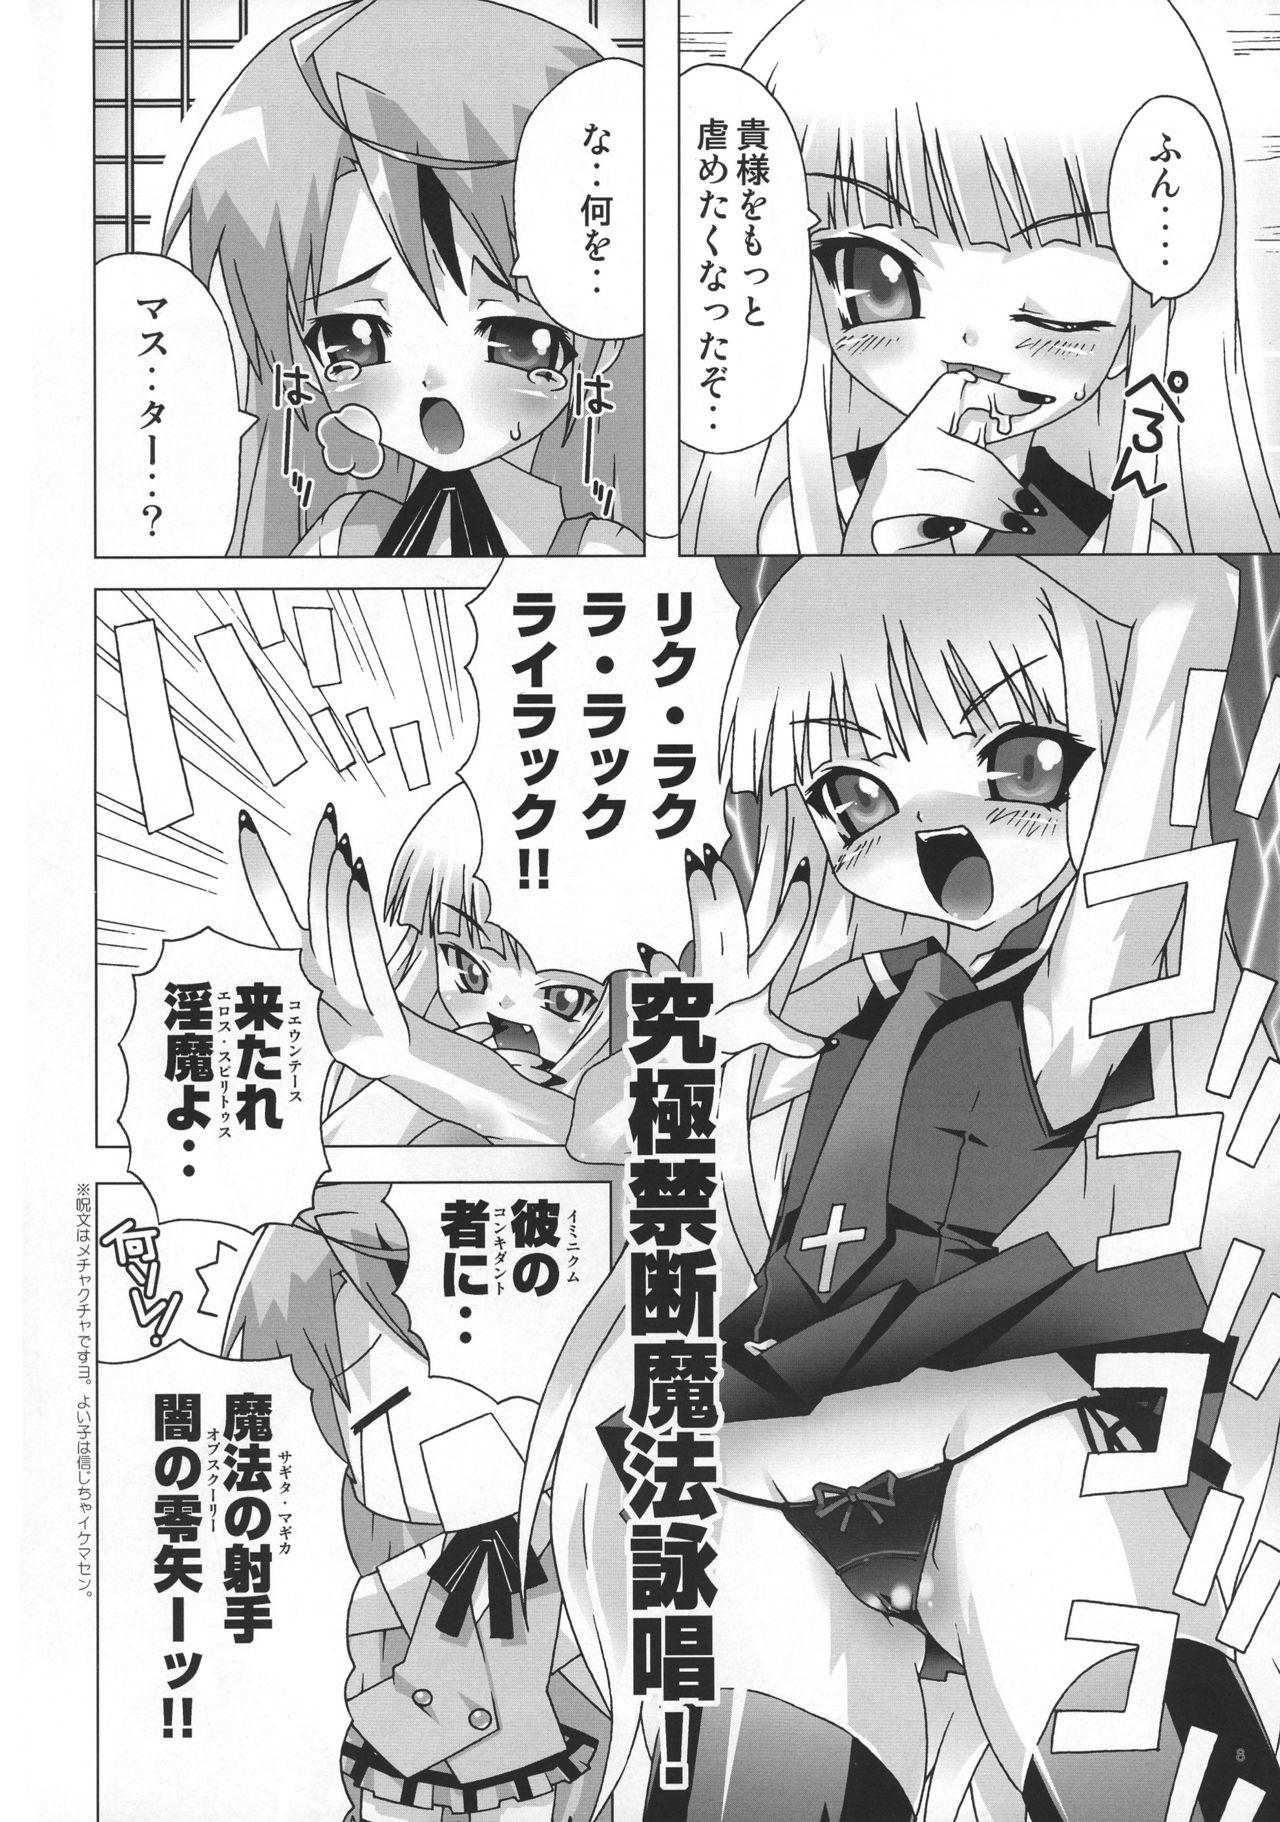 Hardsex Mahou Sensei Negima! Mainax 2 - Mahou sensei negima Hymen - Page 7